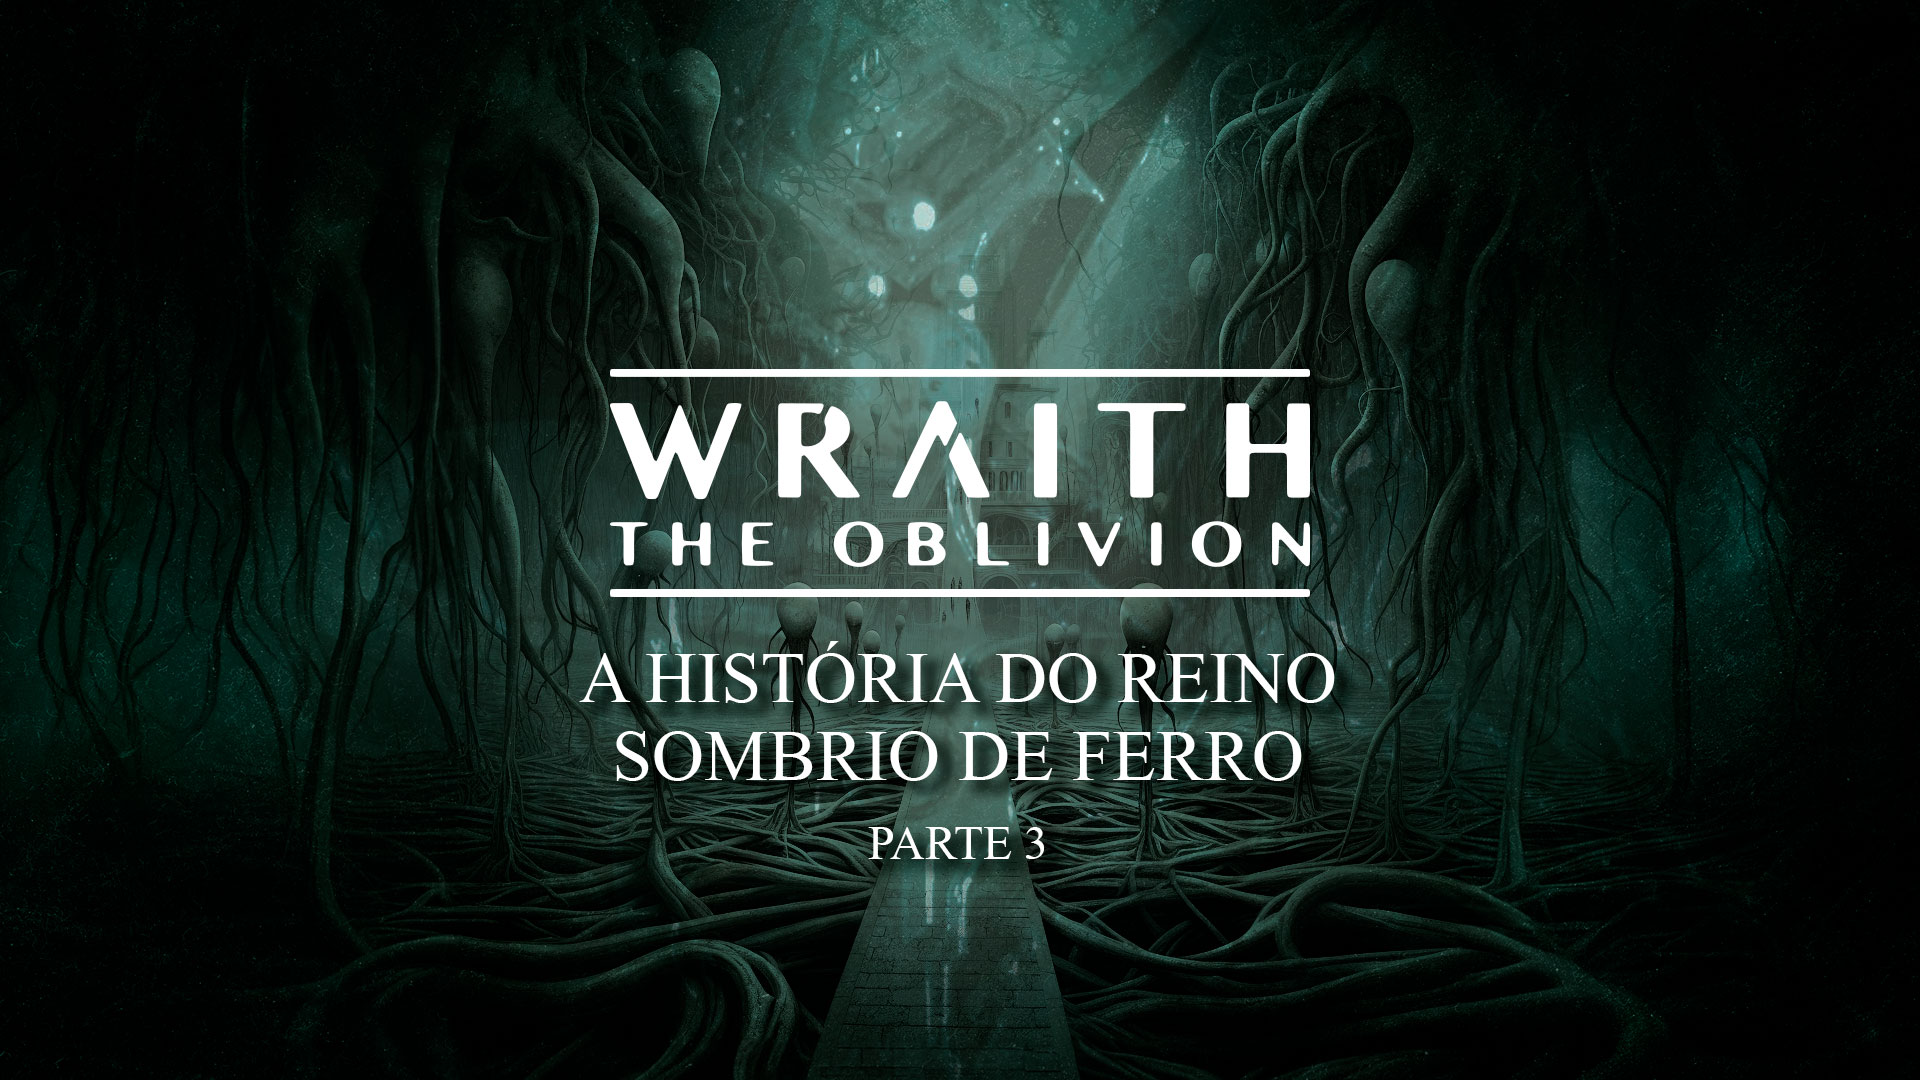 A História do Reino Sombrio de Ferro: Parte 3 – Histórias de Wraith